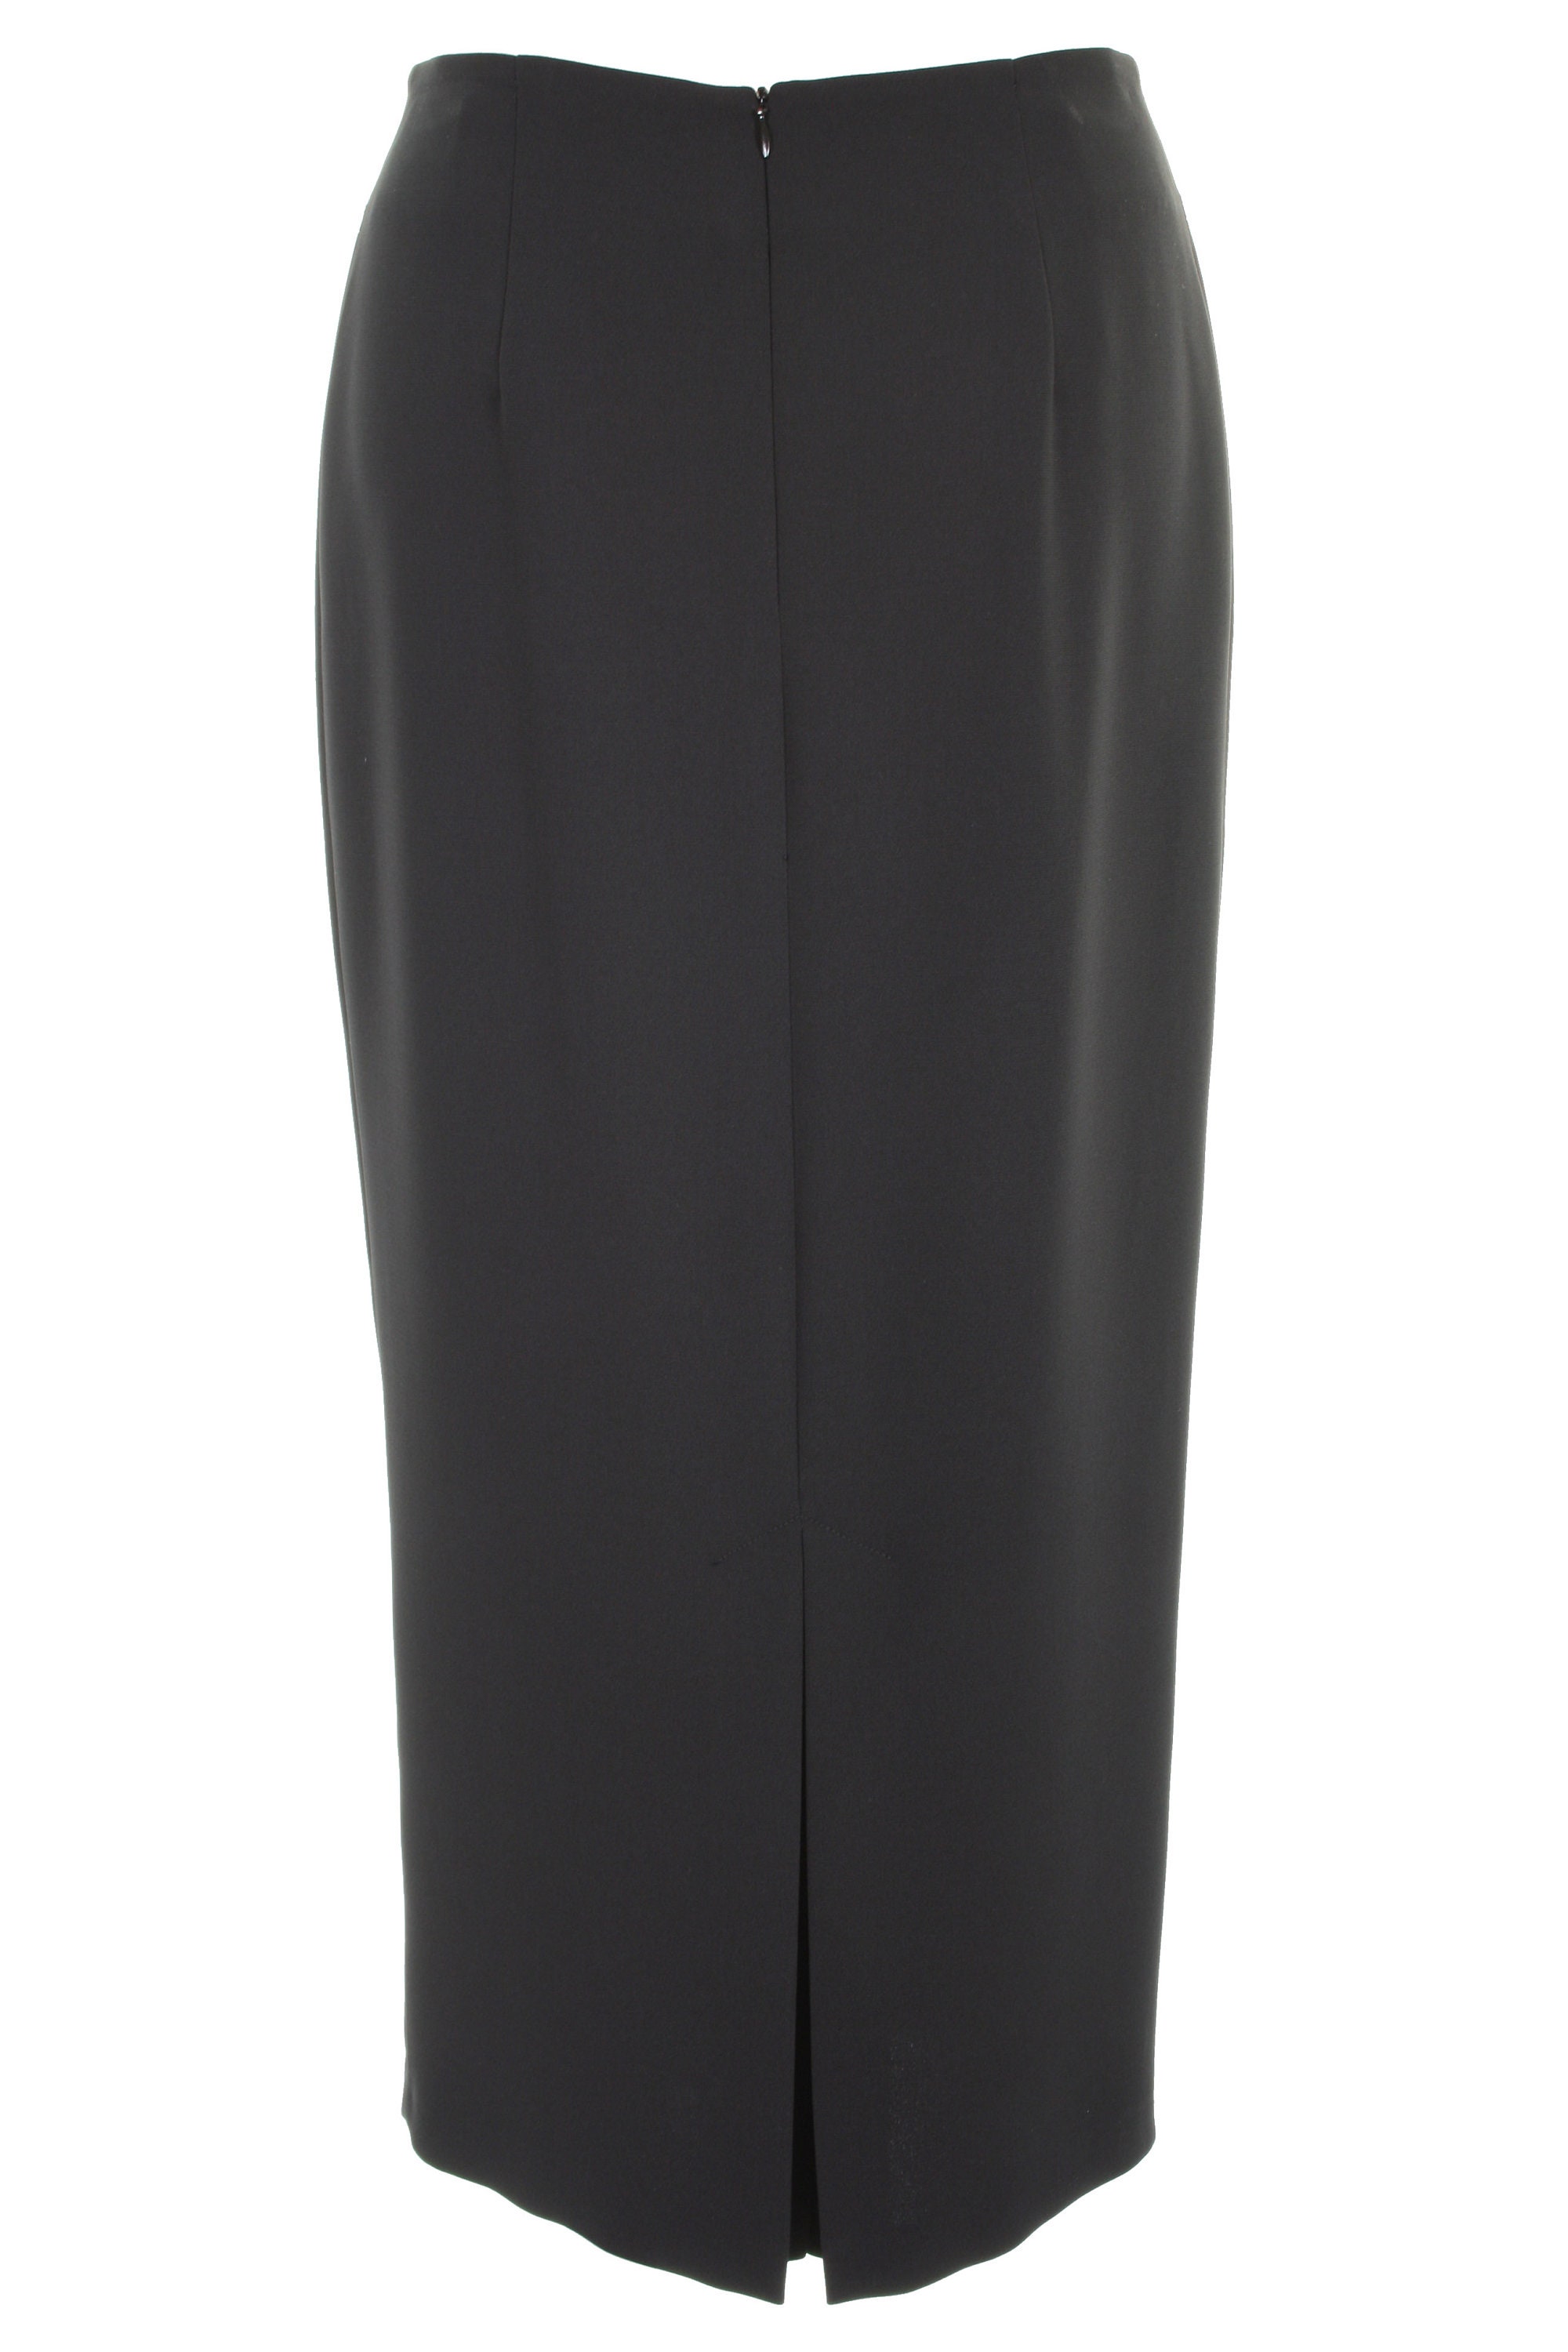 Busy Women's Full Length Max Long Skirt in Black, Navy, Brown, Light ...